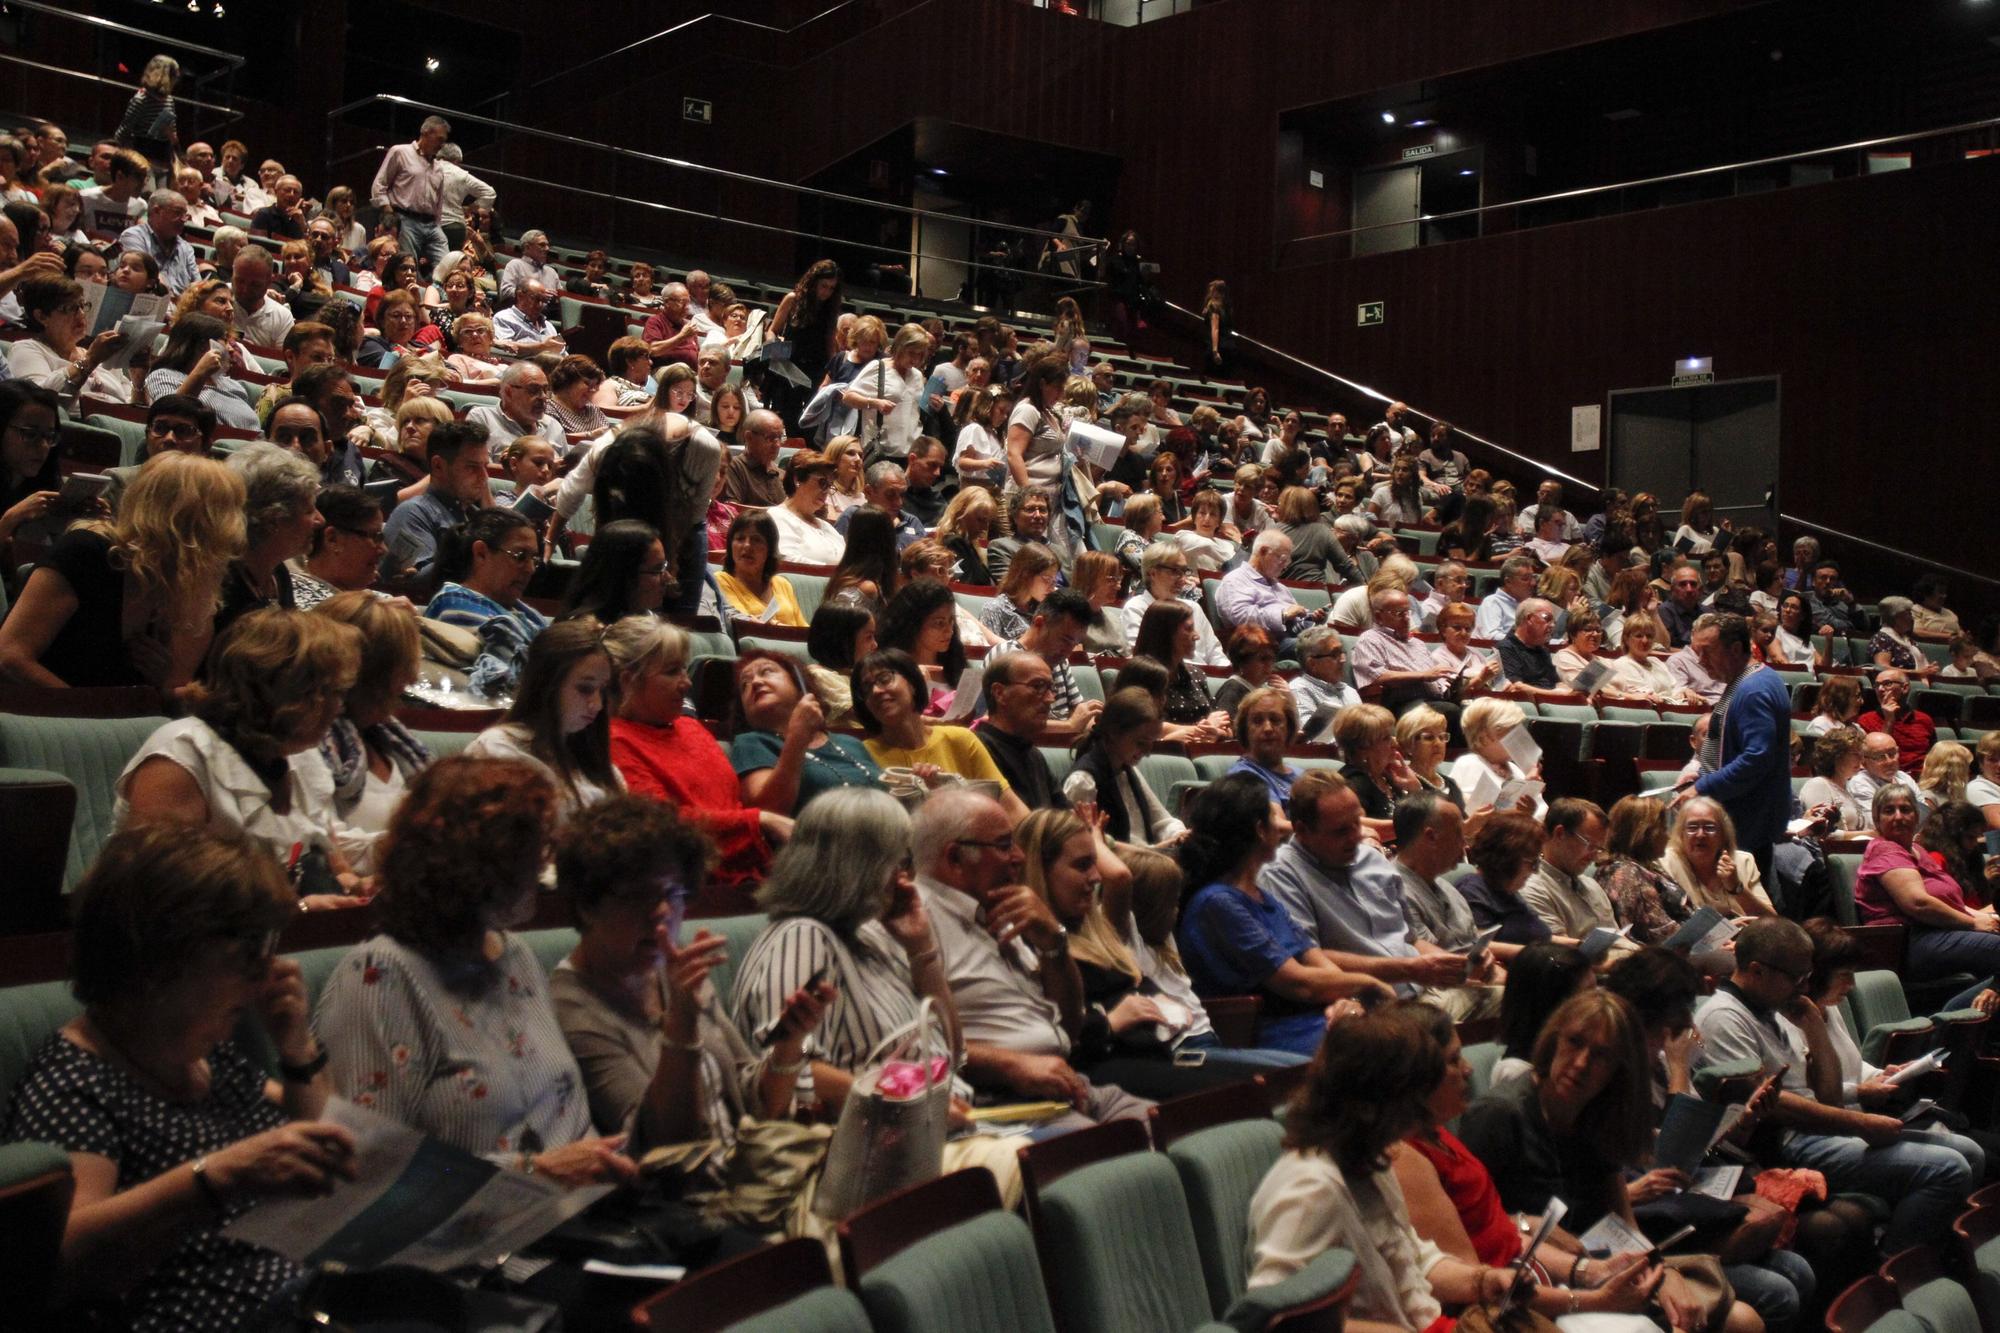 El Gran Teatre de Xàtiva celebra 20 años: una mirada a los intérpretes que lo han visitado